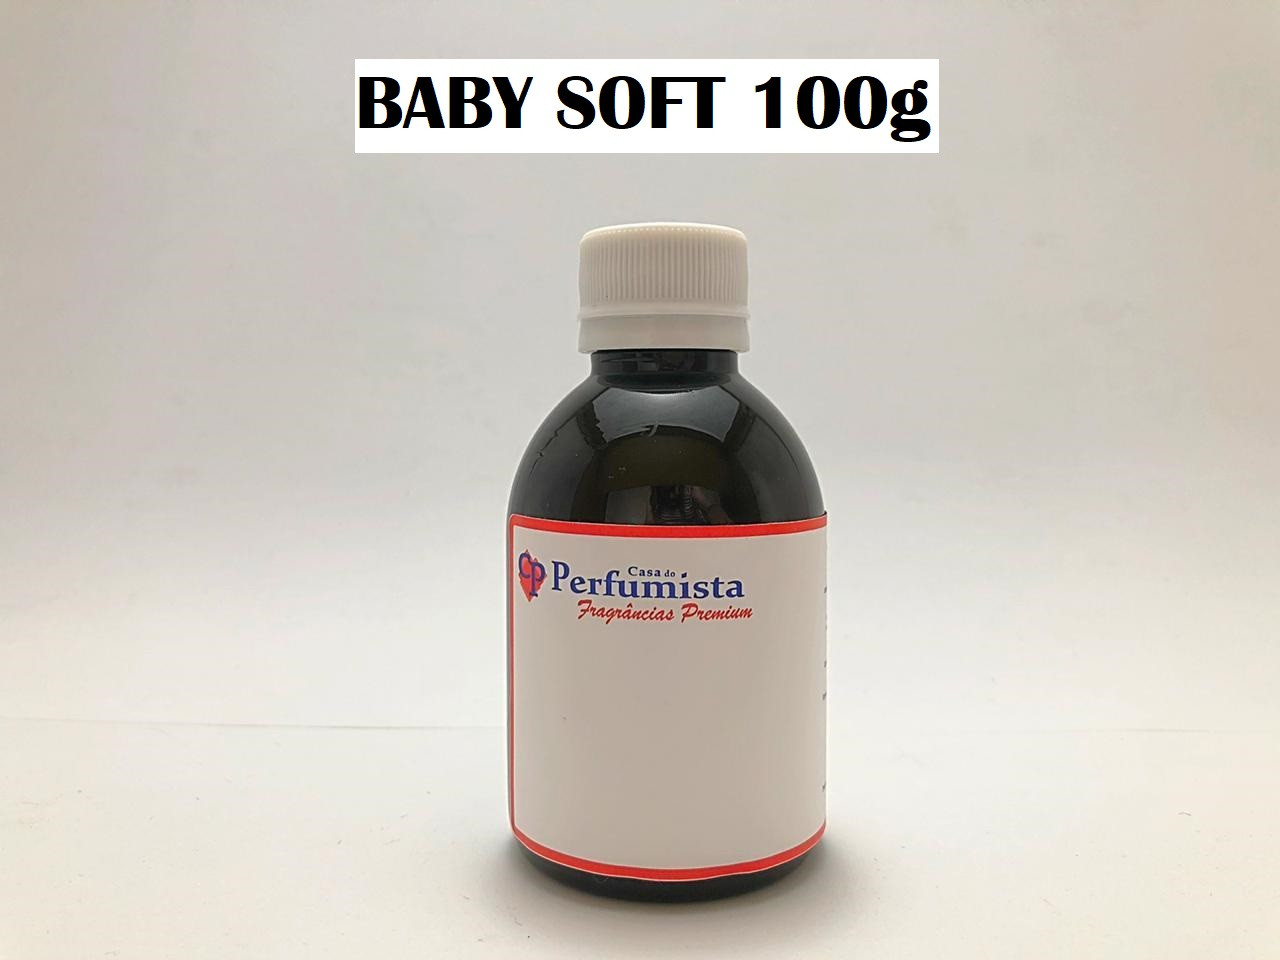 BABY SOFT - 100g